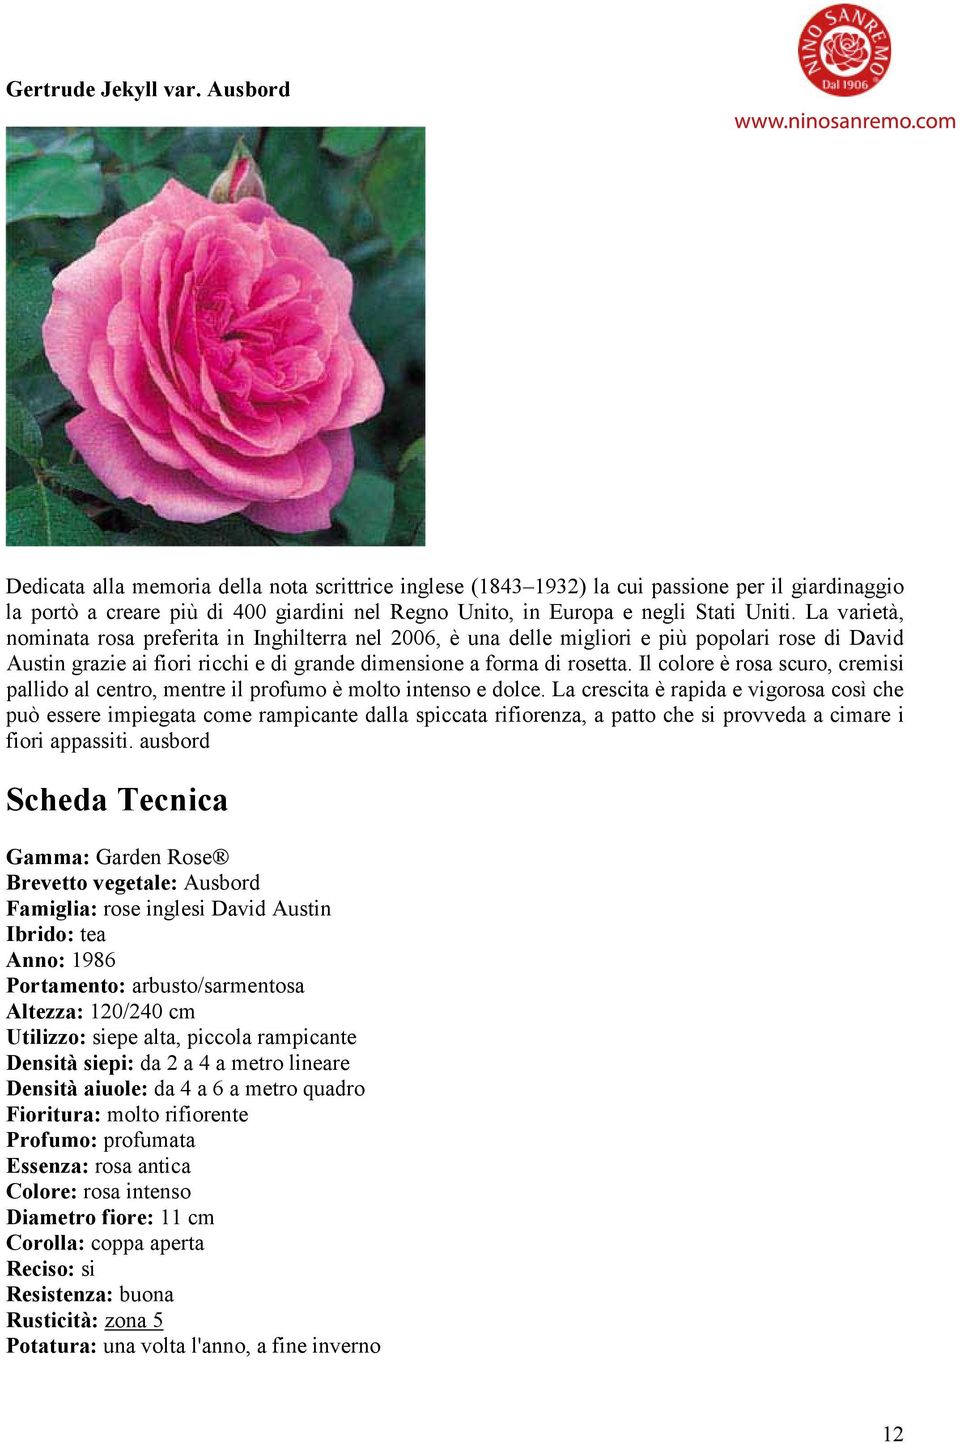 La varietà, nominata rosa preferita in Inghilterra nel 2006, è una delle migliori e più popolari rose di David Austin grazie ai fiori ricchi e di grande dimensione a forma di rosetta.